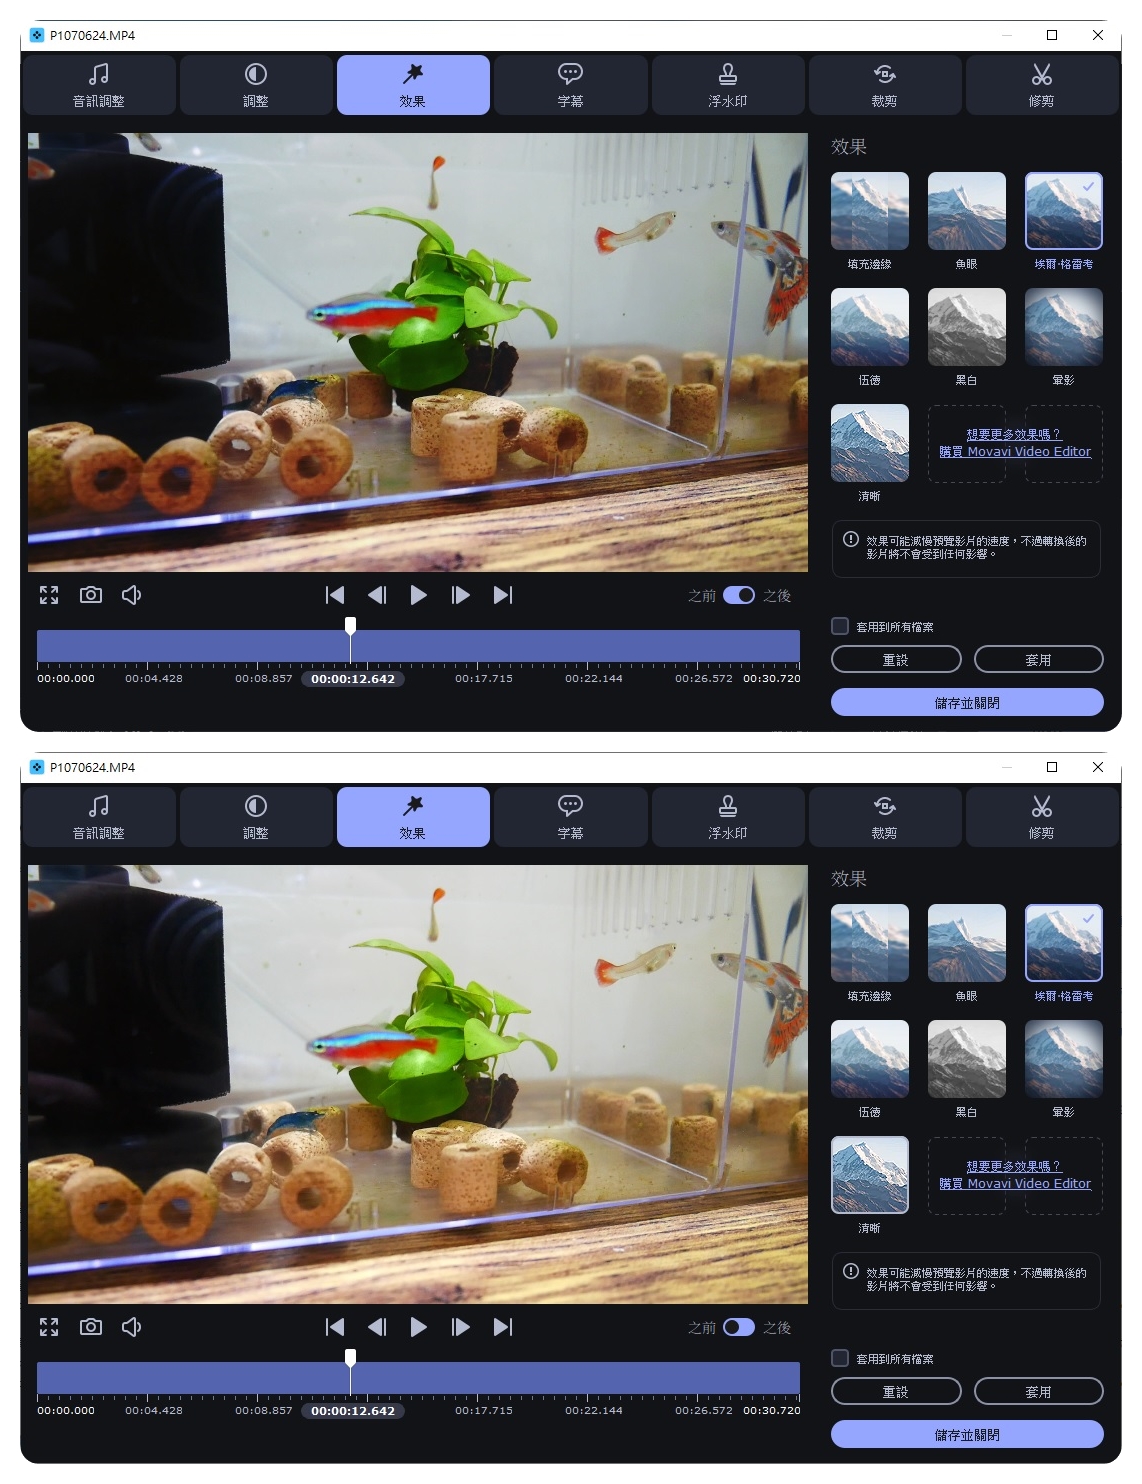 影片轉檔工具推薦 Movavi Video Converter 品質無損壓縮、驚人加速功能SuperSpeed